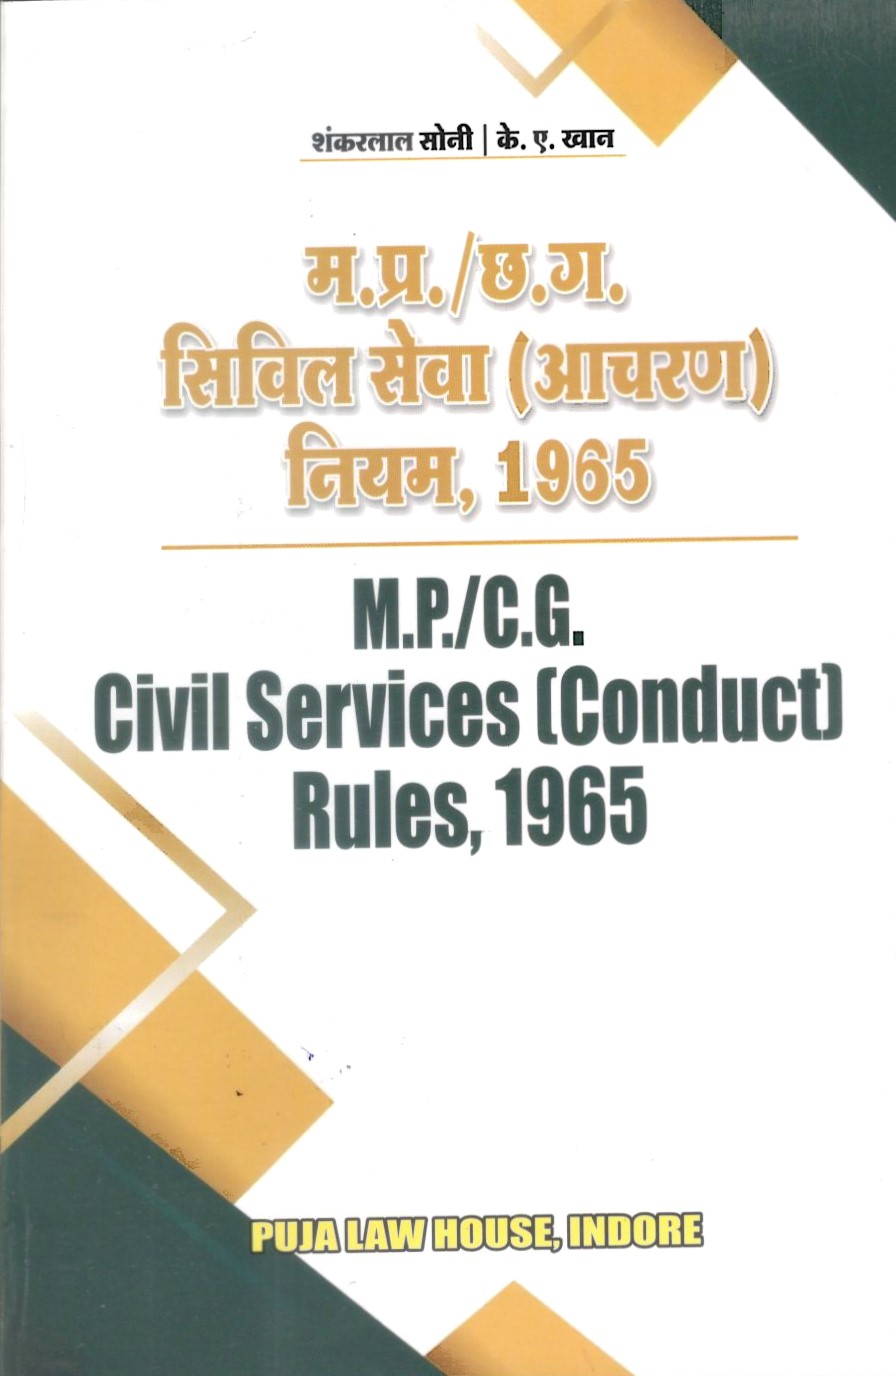 The Madhya Pradesh Civil Services (Conduct)  Rules, 1965 / शंकरलाल सोनी |  के.ए. खान – मध्य प्रदेश सिविल सेवा (आचरण) नियम, 1965